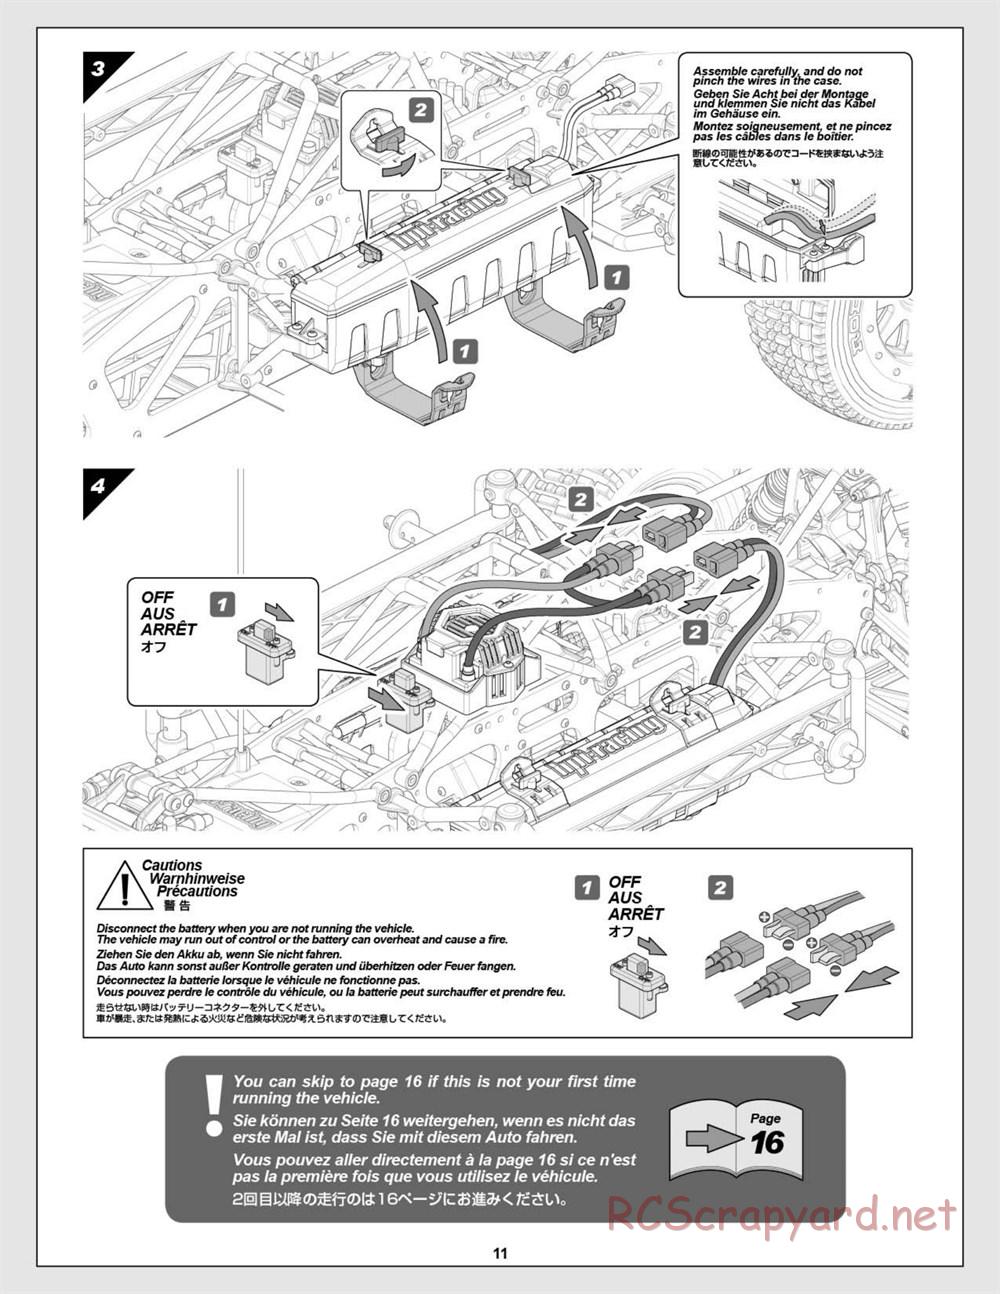 HPI - Super 5SC Flux - Manual - Page 11